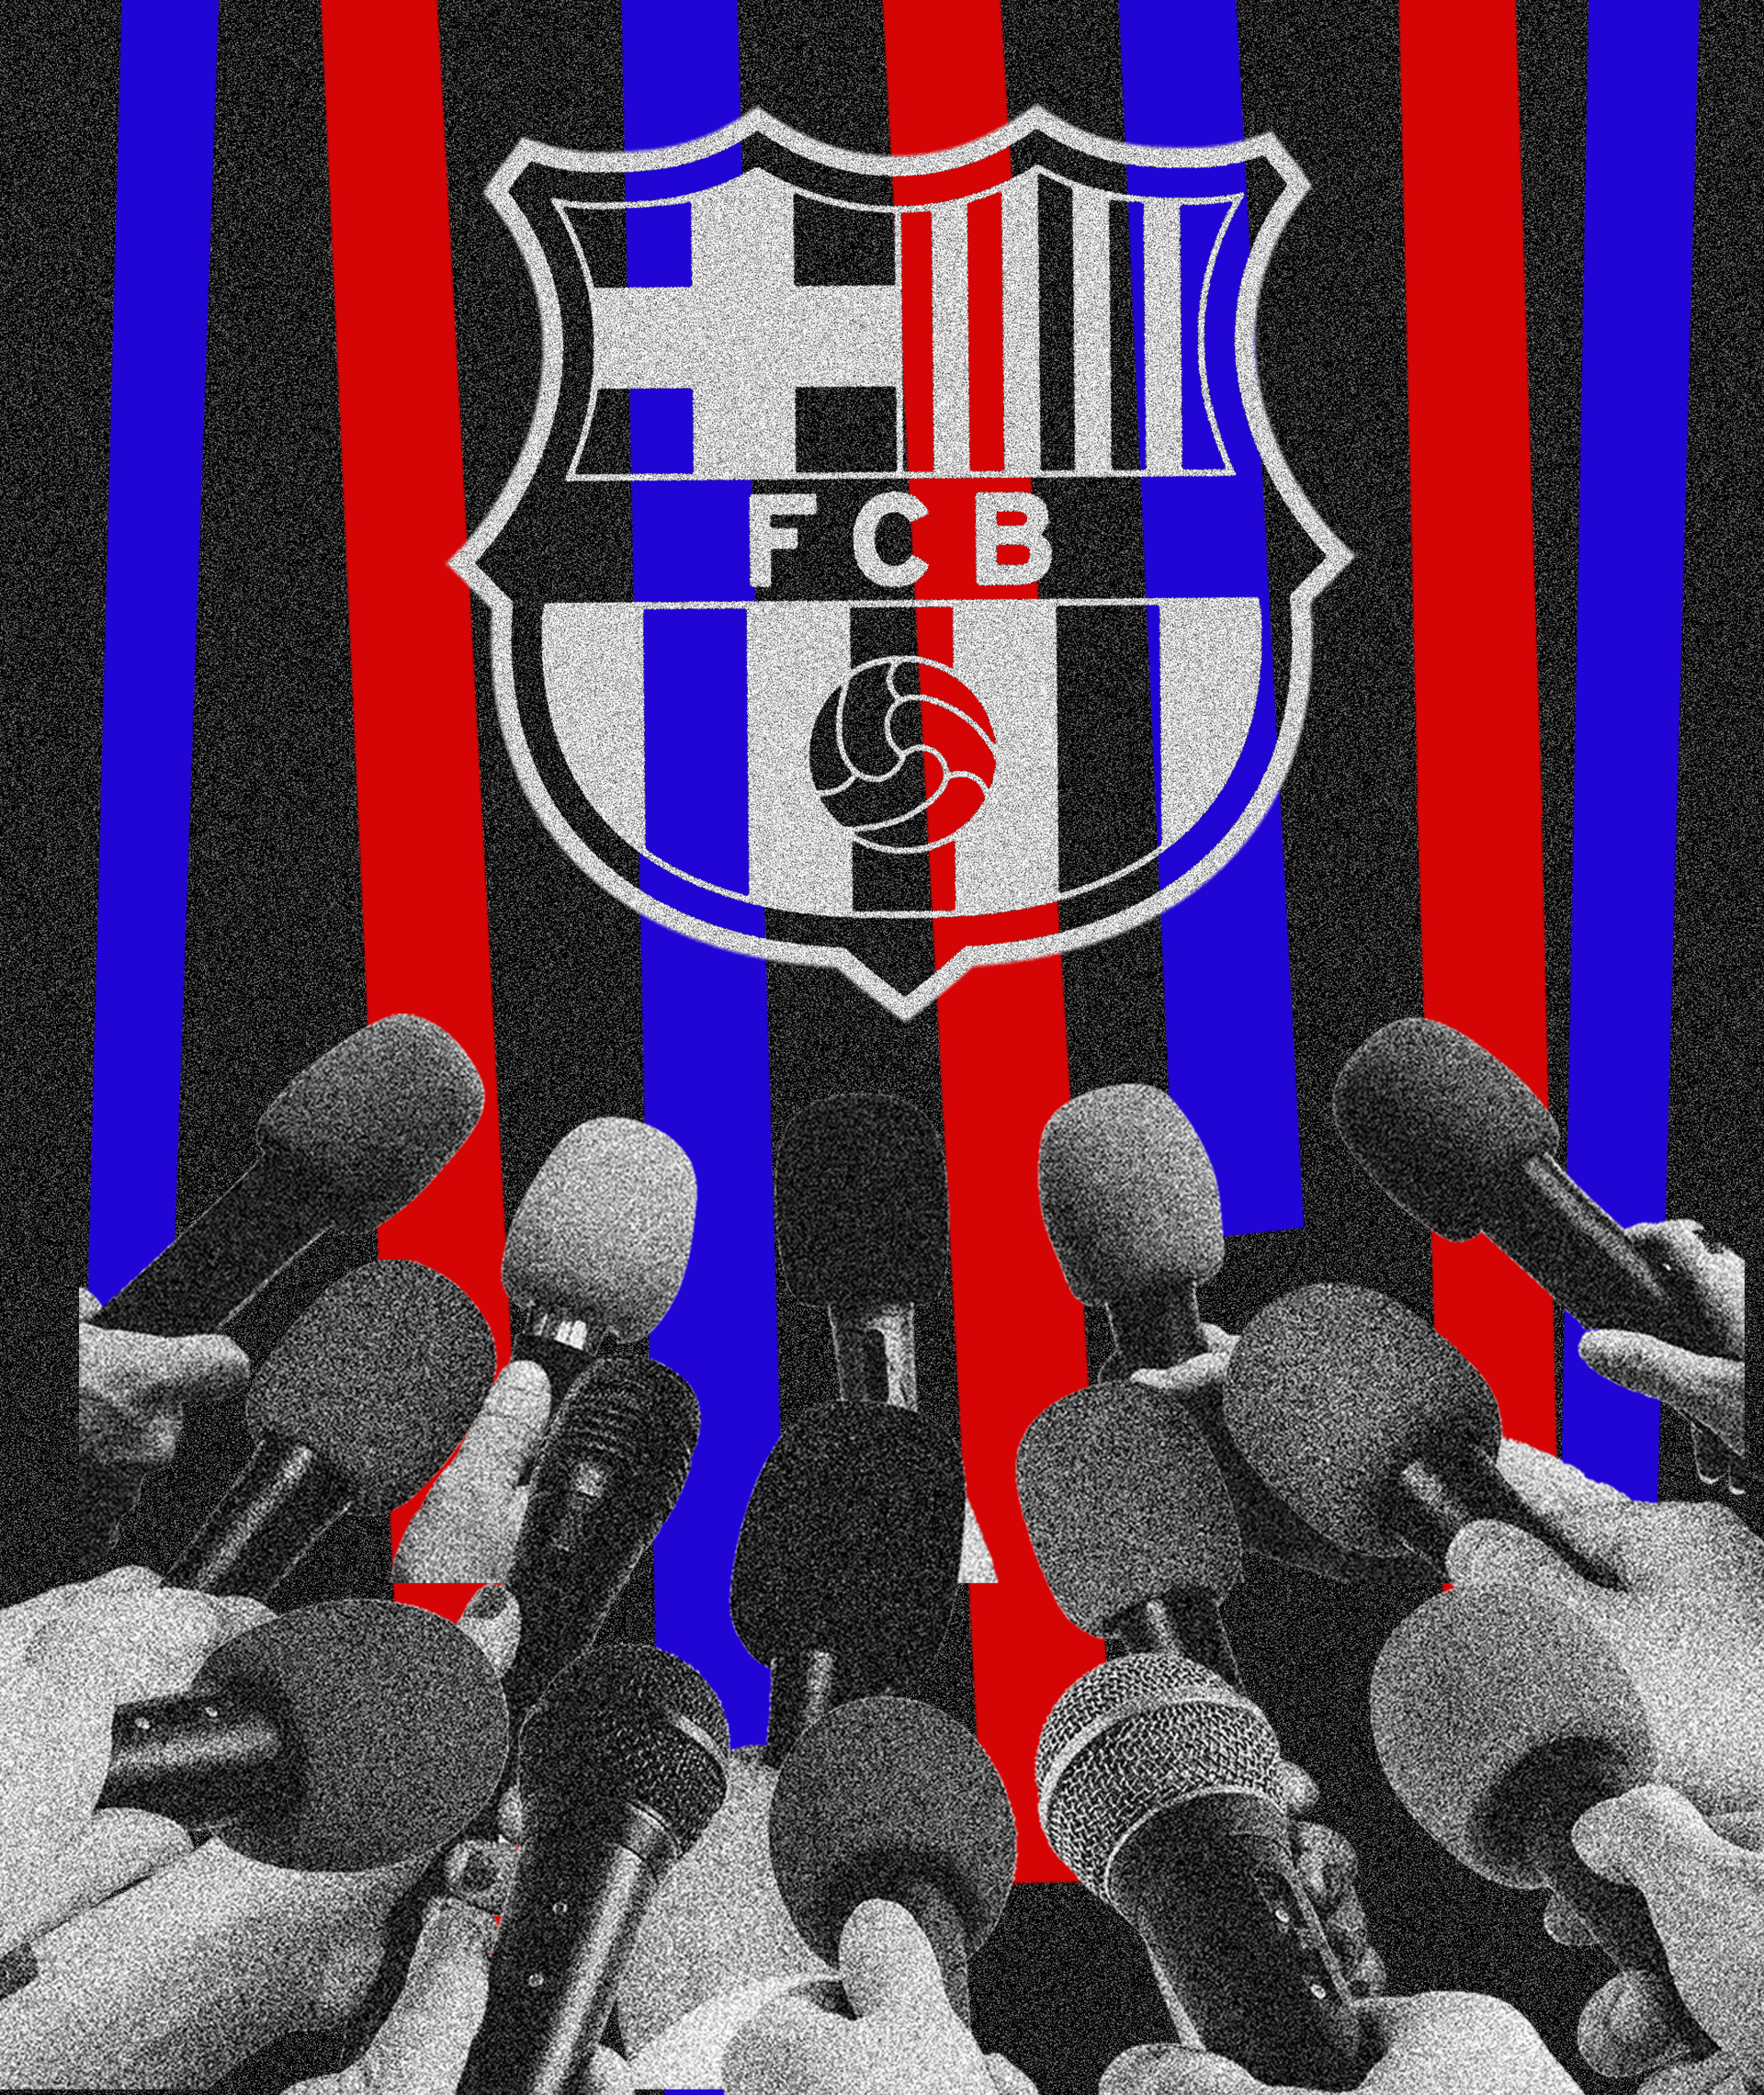 Los 85 díscolos que desafían el silencio social del Barça en el caso Negreira: "El socio está anestesiado"